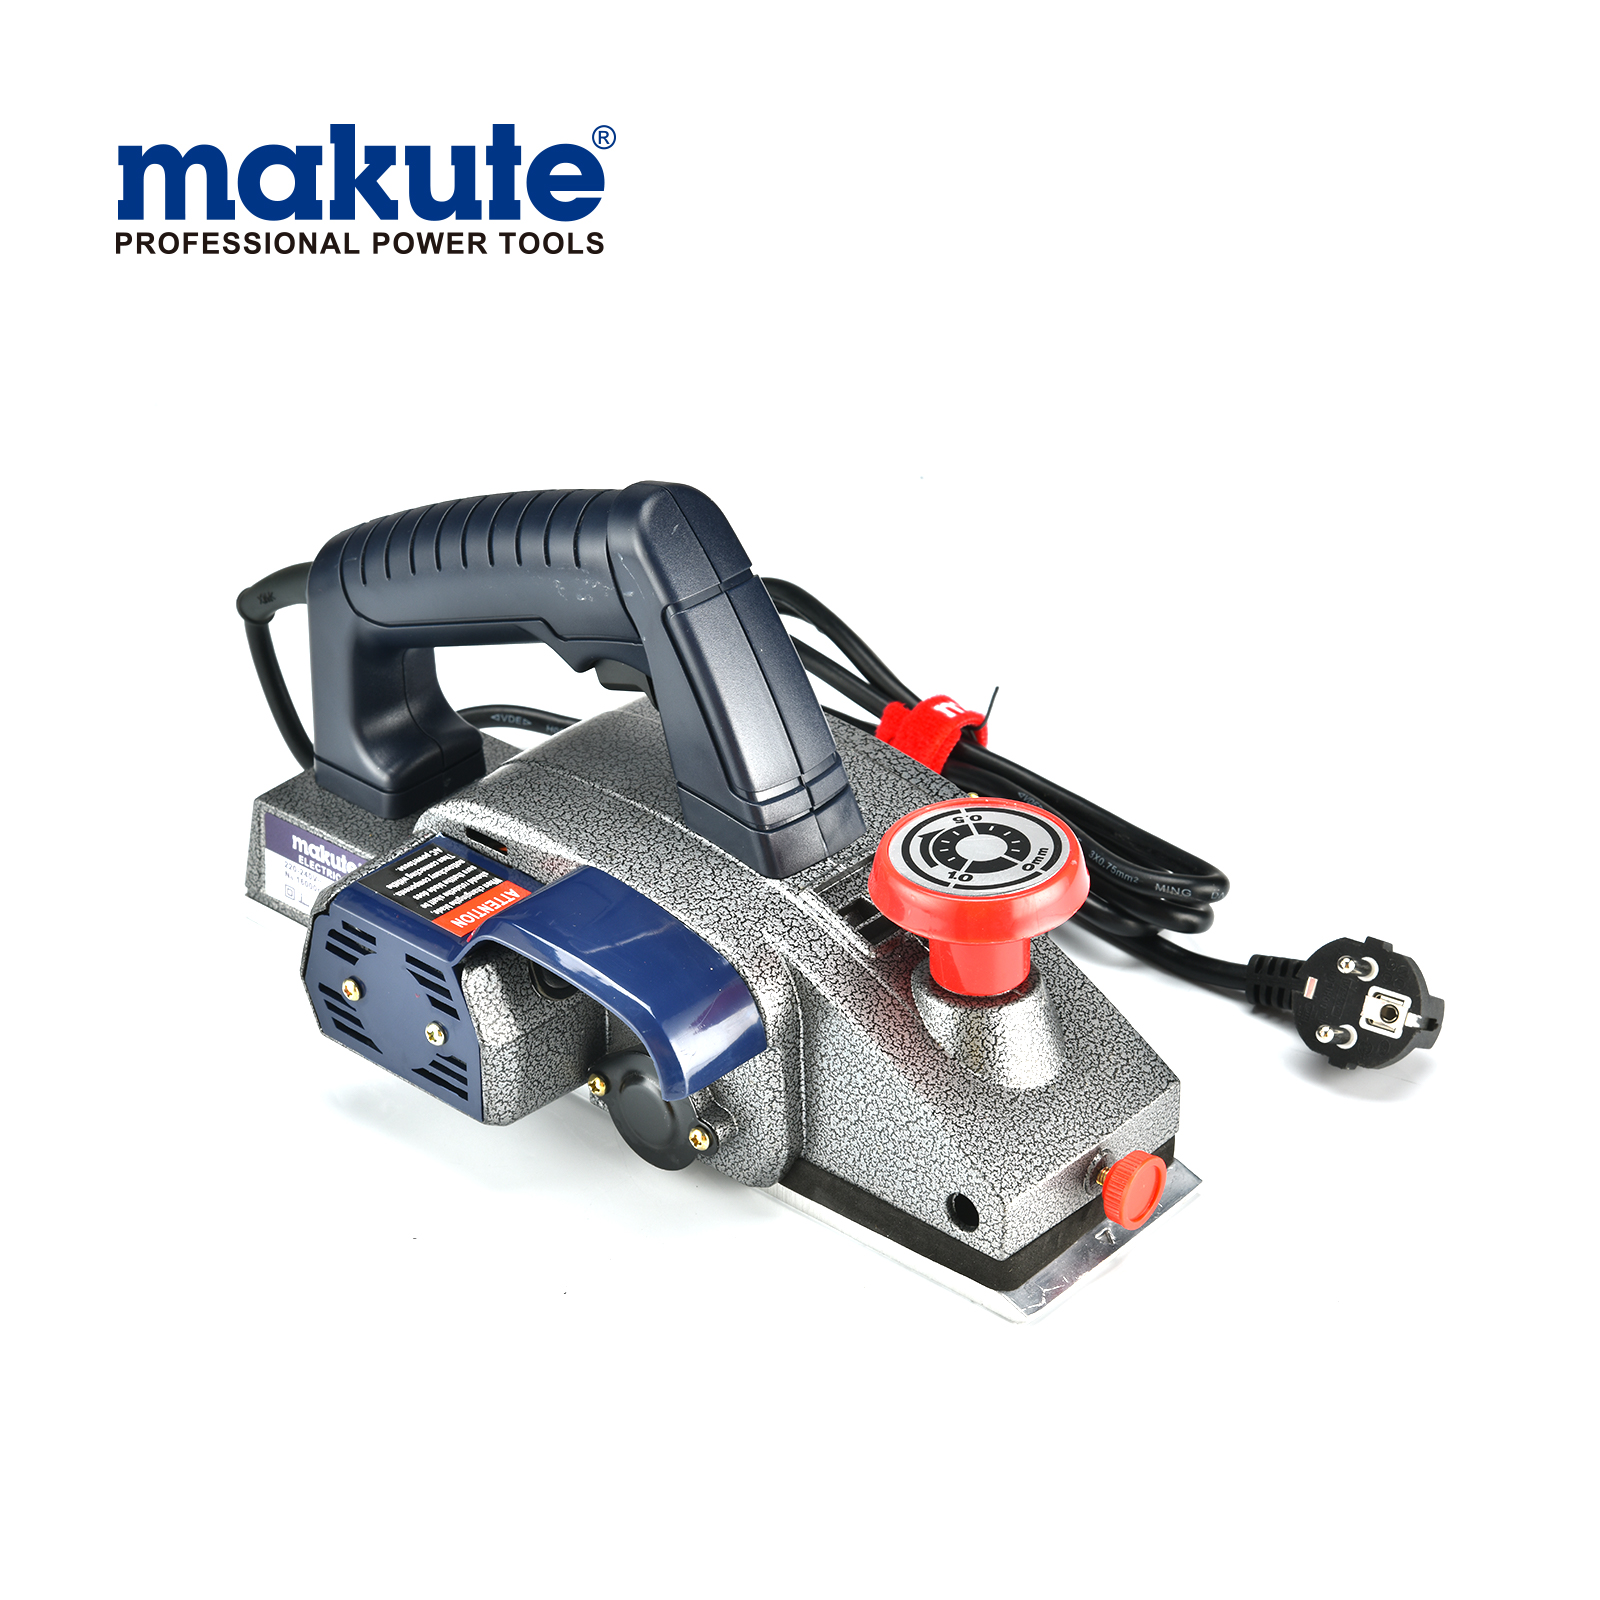 makute 220v 750w herramientas eléctricas EP002 herramienta de carpintería cepilladora eléctrica